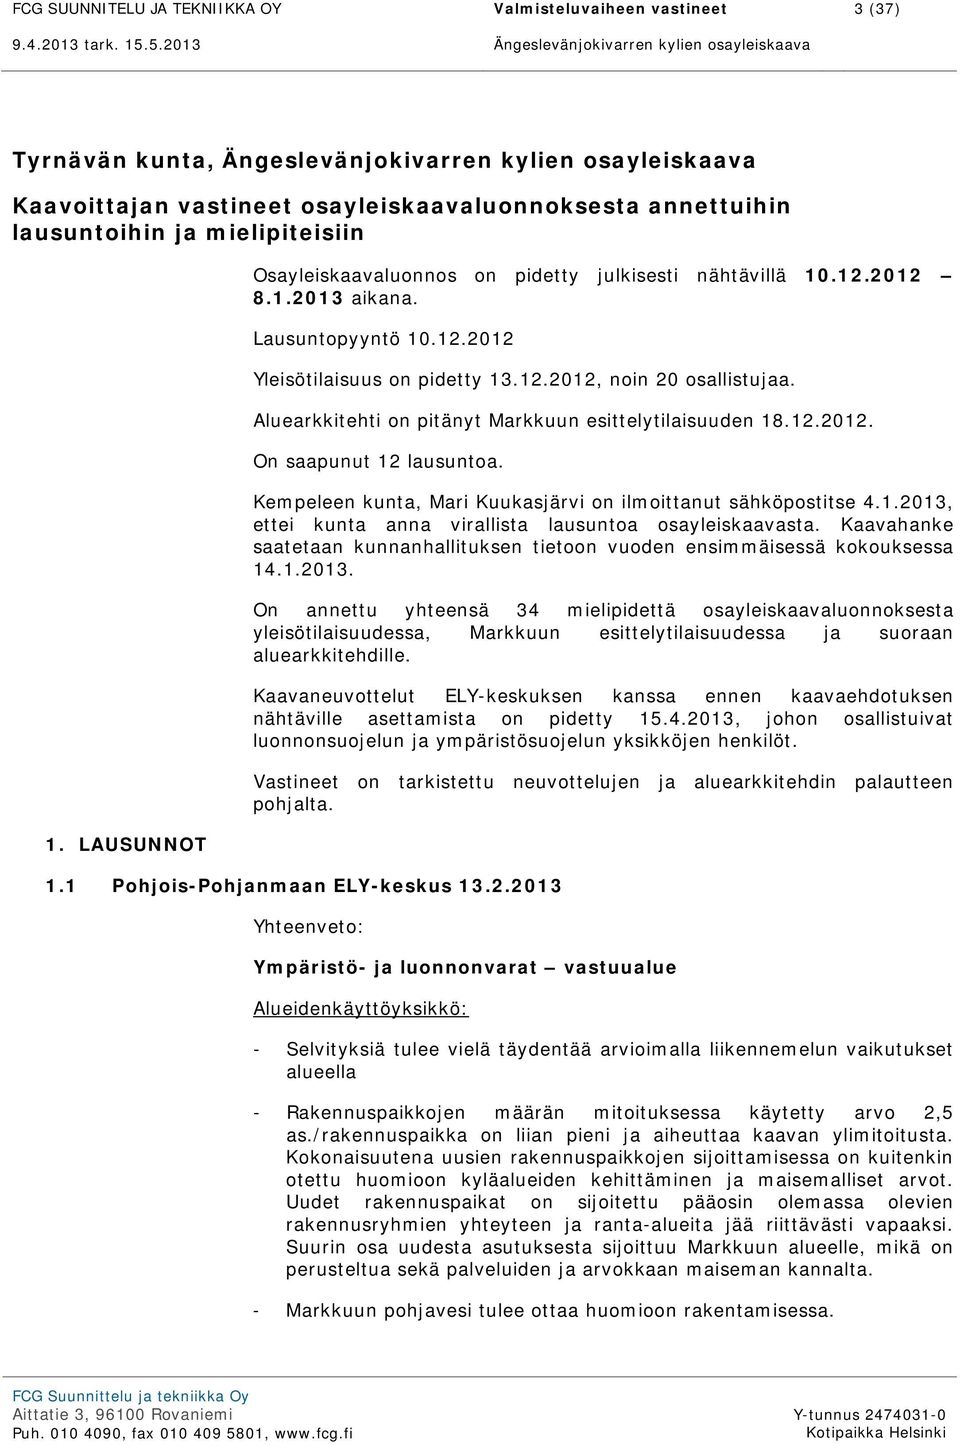 Aluearkkitehti on pitänyt Markkuun esittelytilaisuuden 18.12.2012. On saapunut 12 lausuntoa. Kempeleen kunta, Mari Kuukasjärvi on ilmoittanut sähköpostitse 4.1.2013, ettei kunta anna virallista lausuntoa osayleiskaavasta.